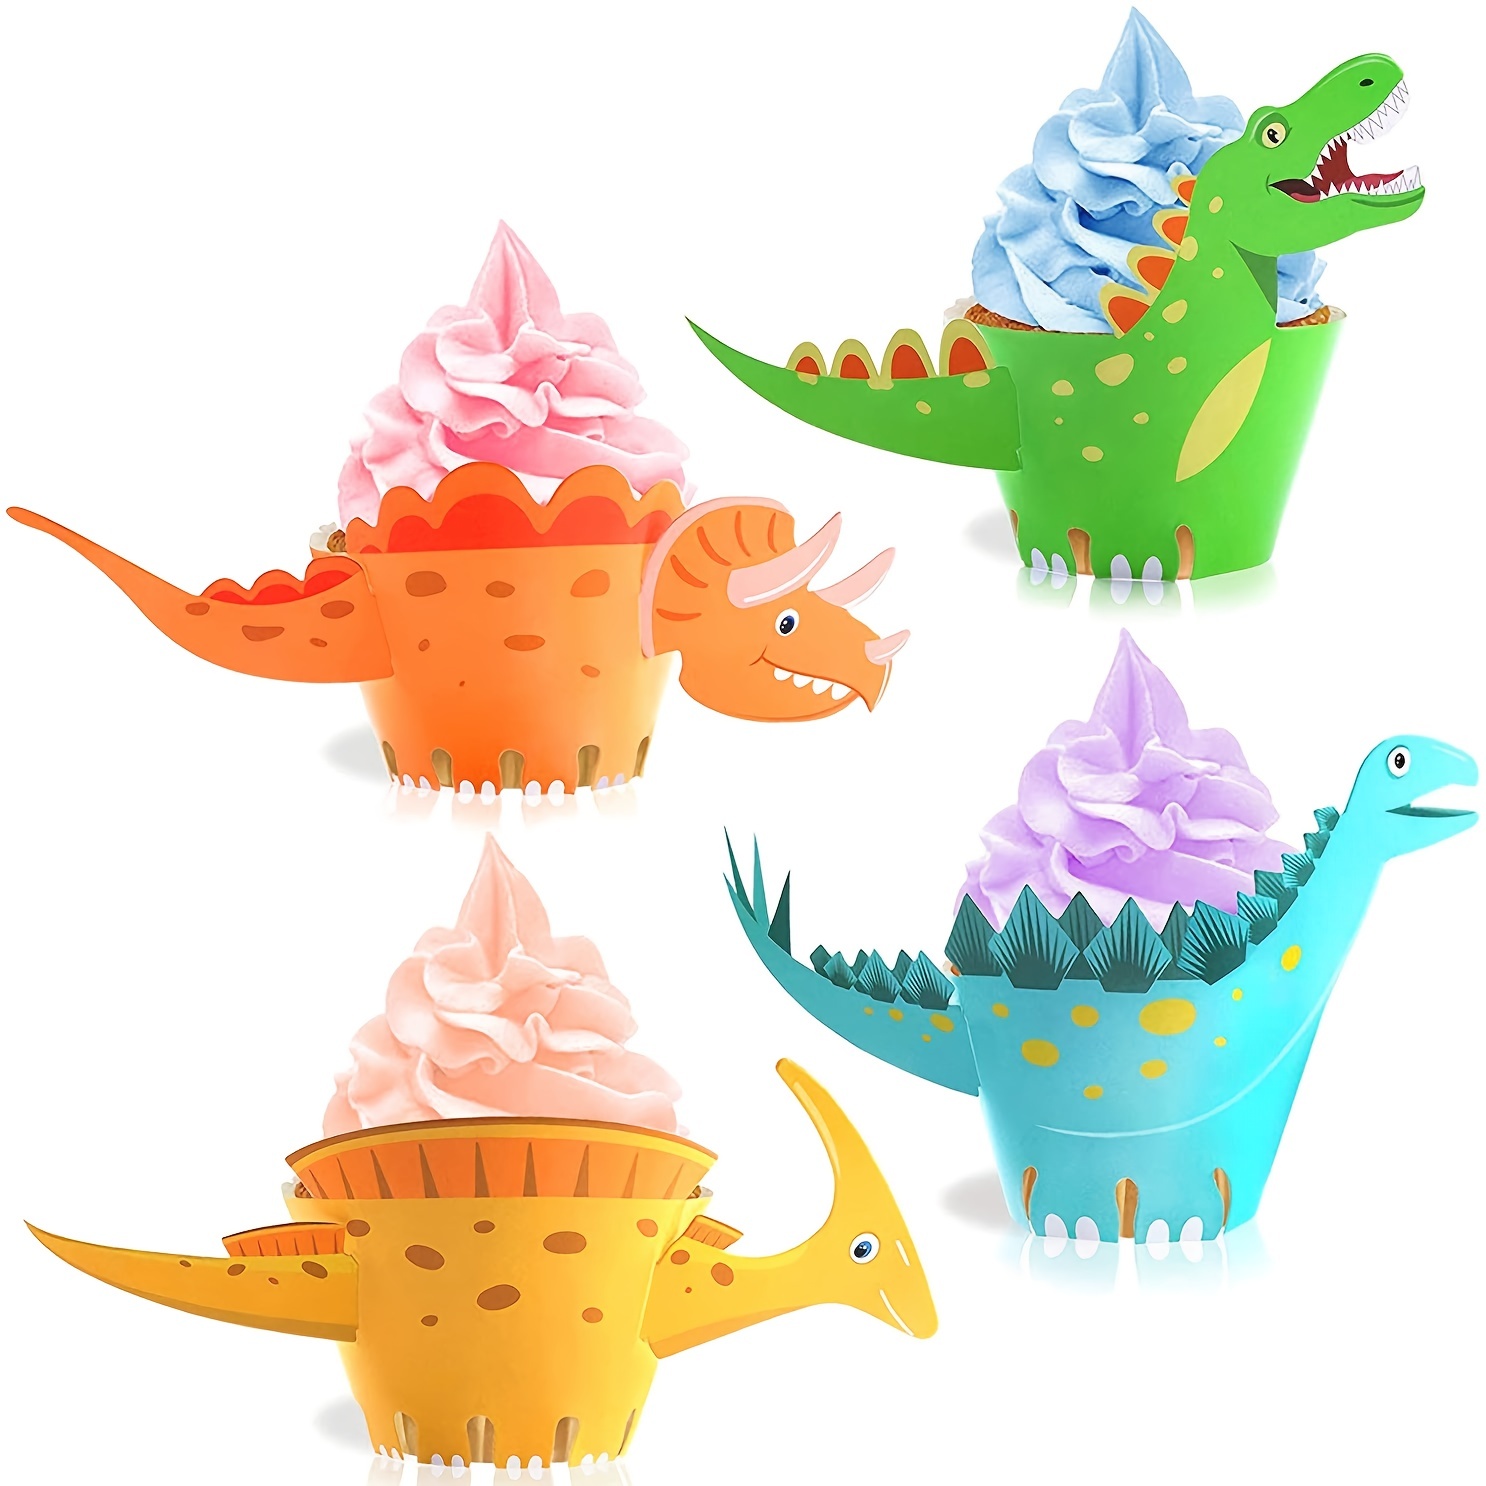 

24pcs Emballage De Cupcakes Dinosaures, Fournitures De Fête Dinosaures, Décoration De Cupcakes Dinosaures, Décoration De Gâteau Dinosaure Pour Les Fournitures De Fête D'anniversaire